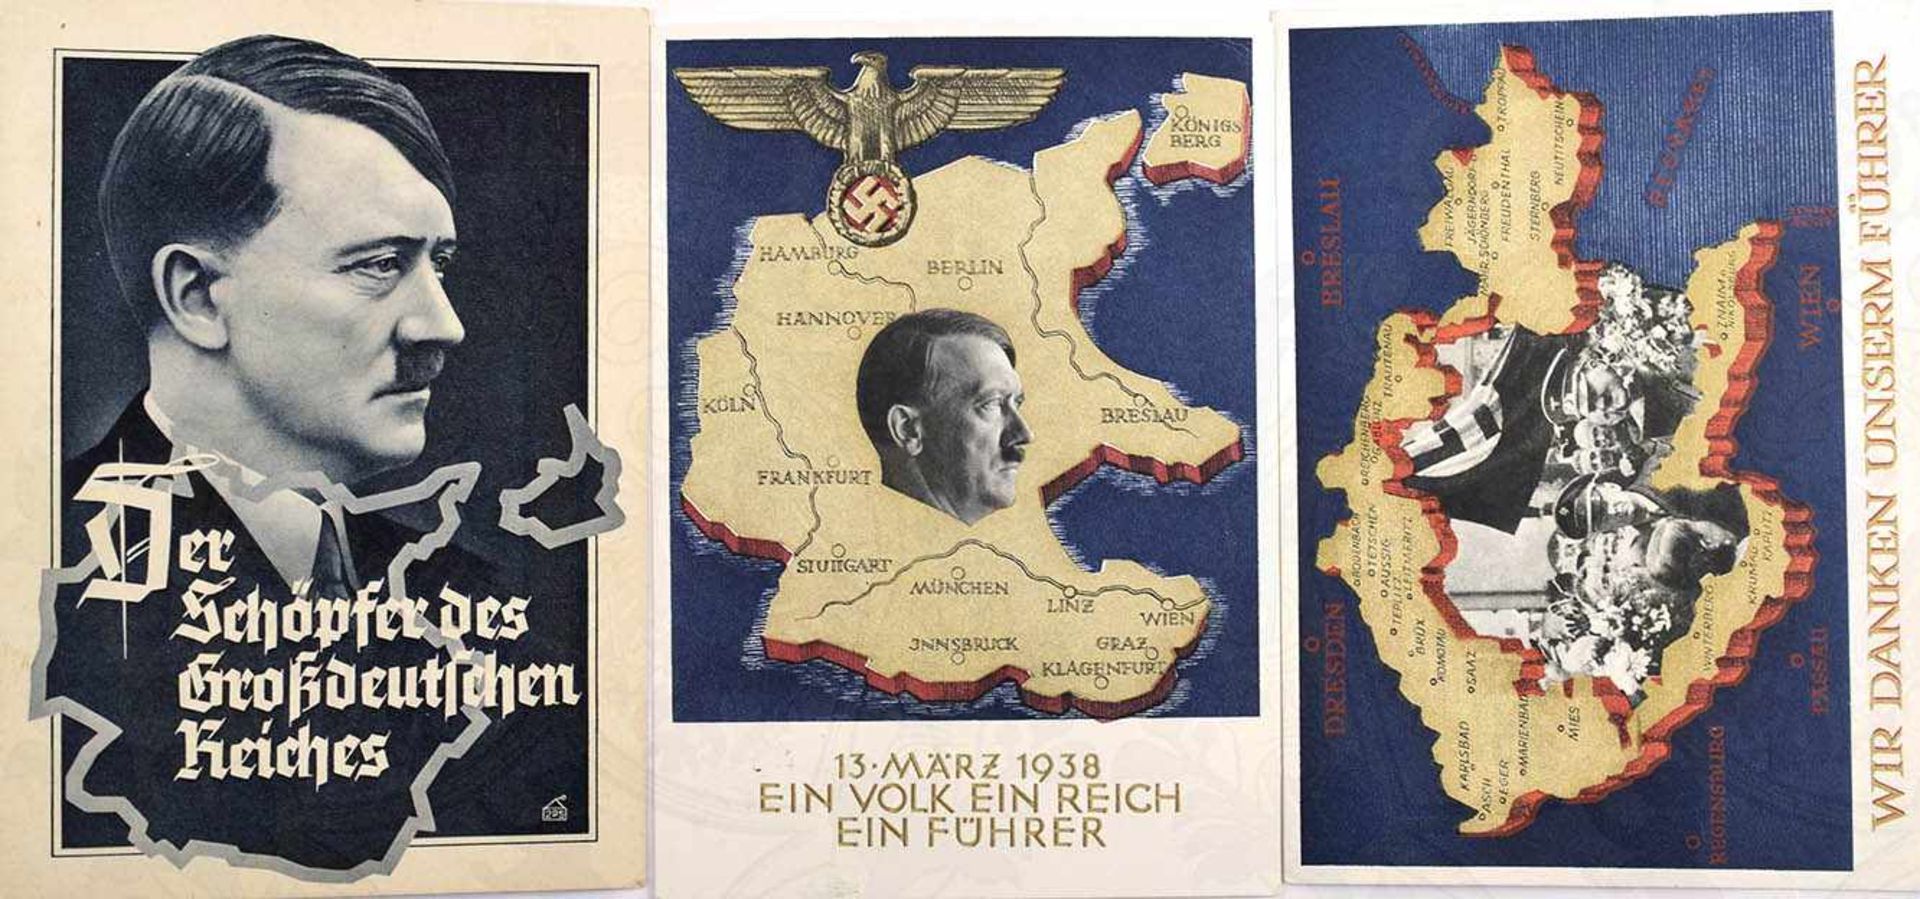 3 PROPAGANDAKARTEN, alle farb., m. Hitlermotiv, Der Schöpfer d. Großdeutschen Reiches; Wir danken